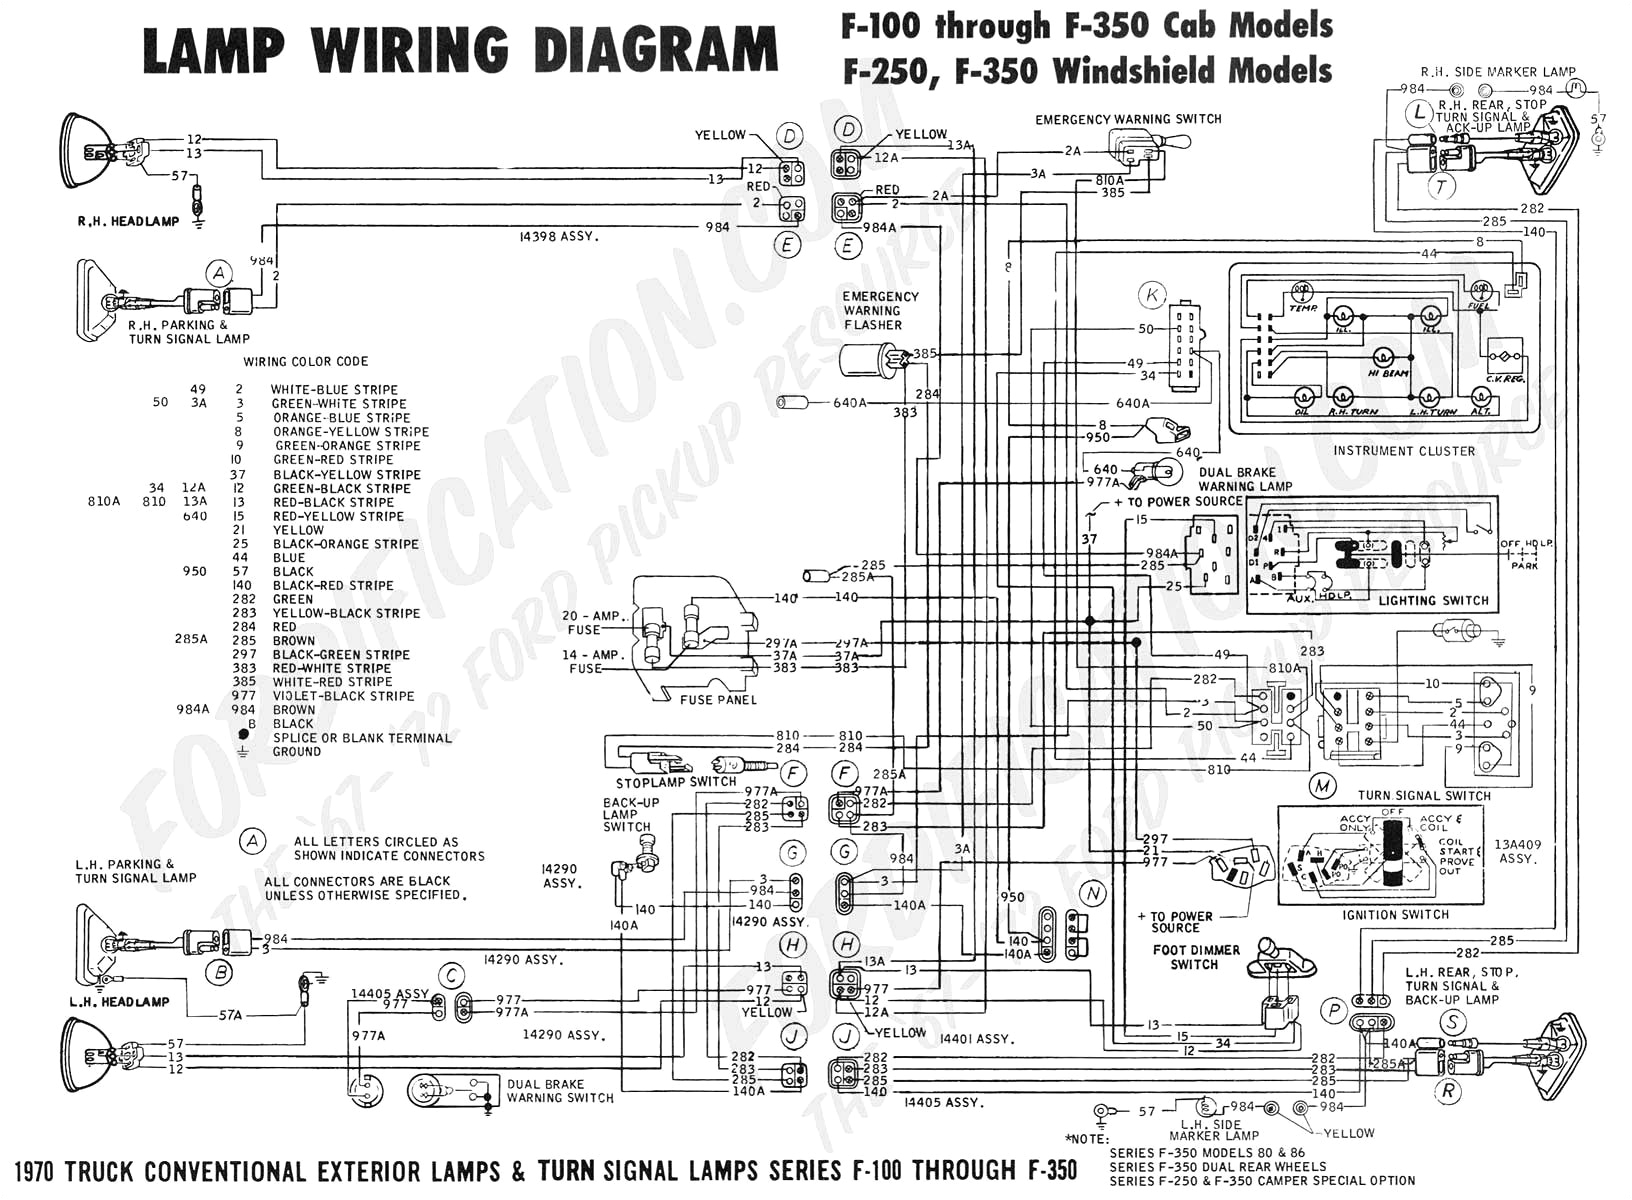 schlage series 300 wiring diagram get wiring diagram schlage series 300 wiring diagram premium wiring diagram